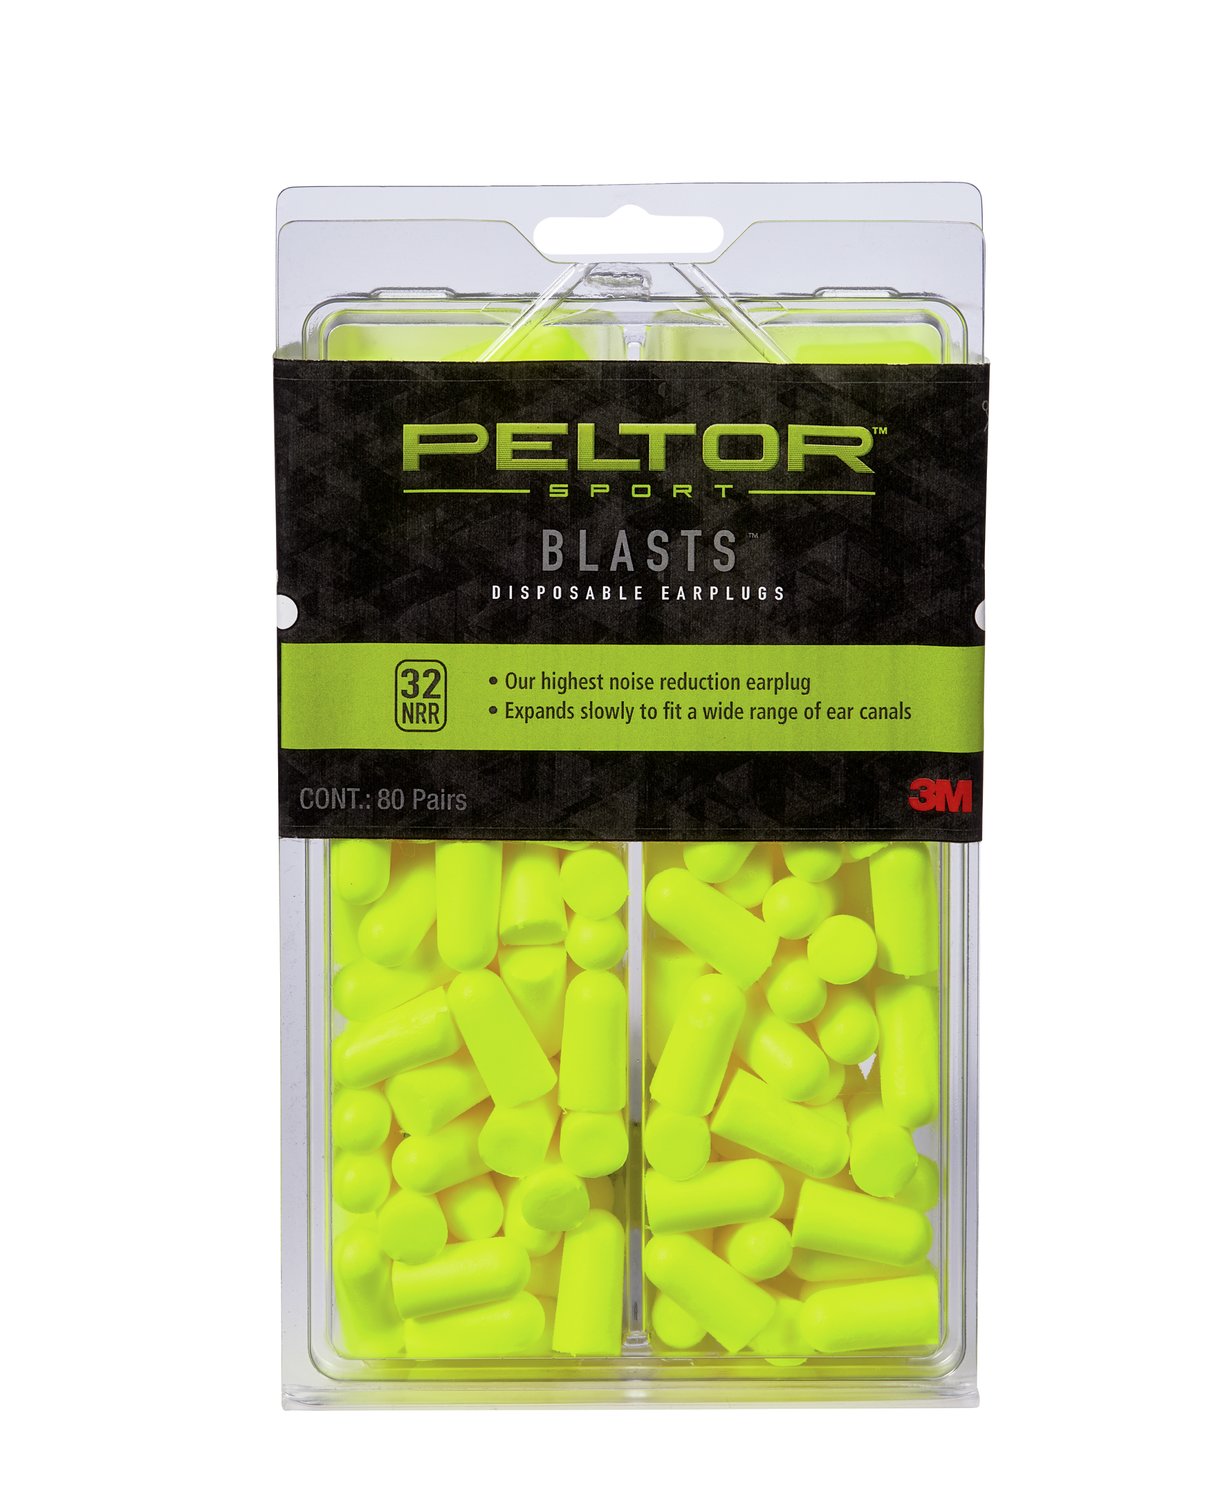 7100088753 - Peltor Sport Blasts Disposable Earplugs 97082-PEL80-6C, 80 ea/pk, Neon
Yellow